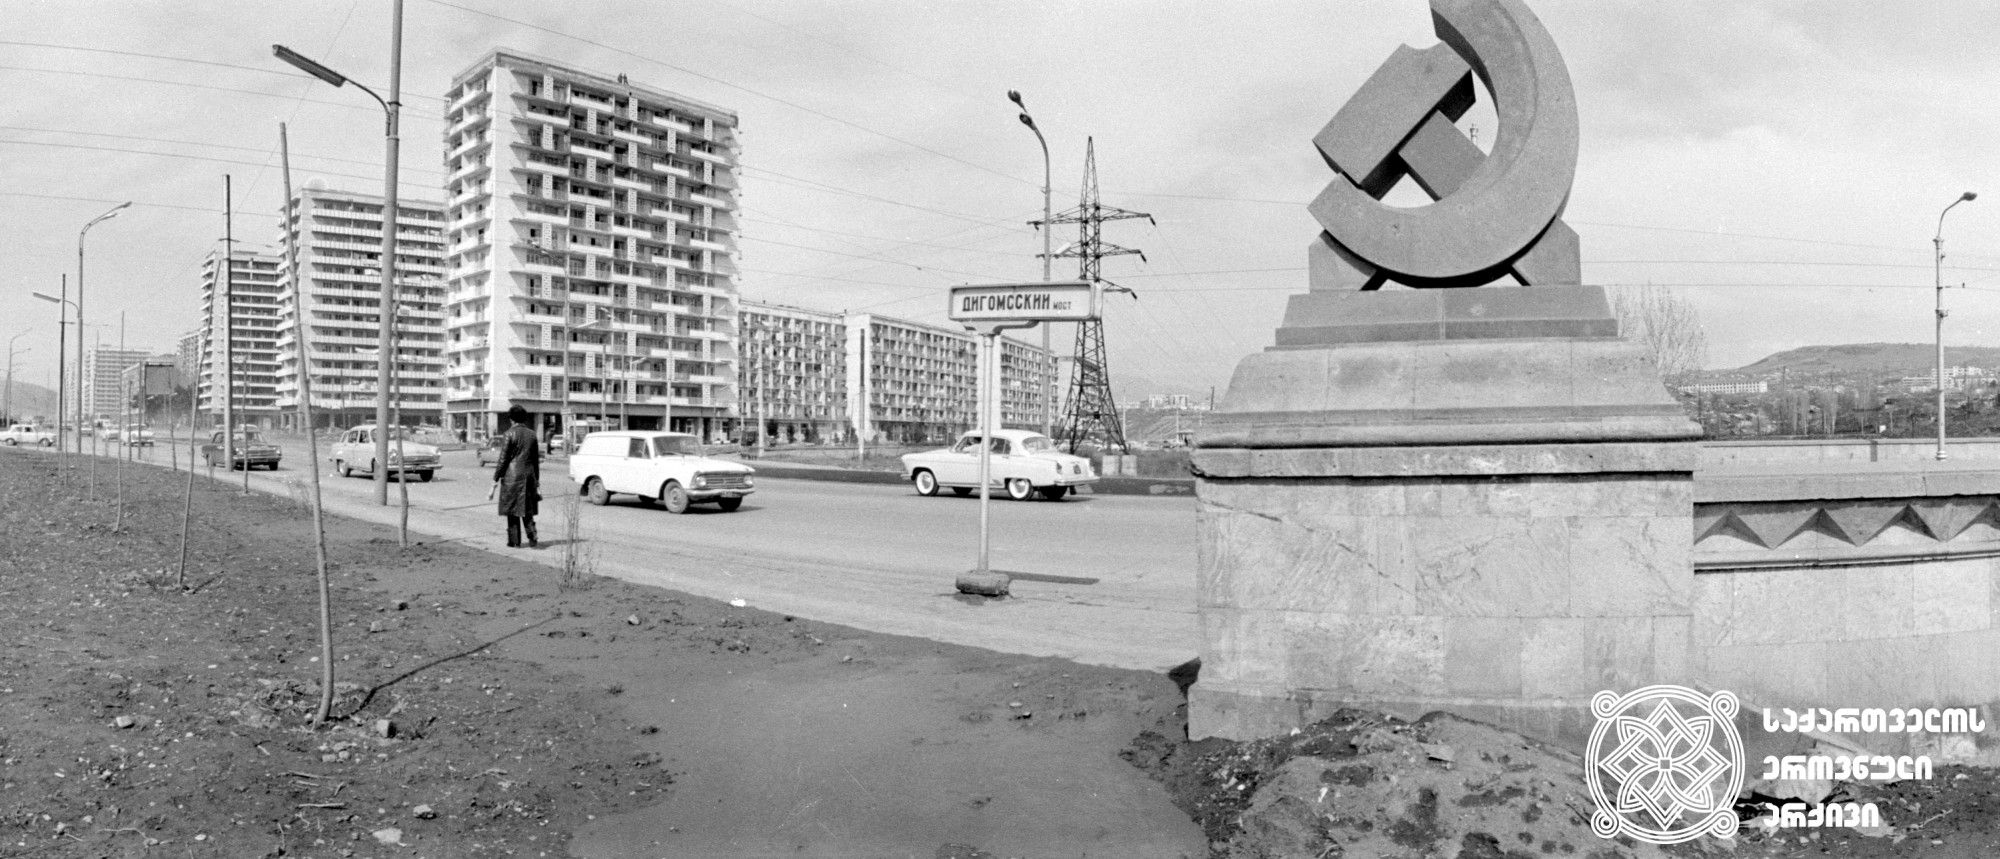 დიღმის ხიდი. თბილისი. საქინფორმის ფოტოქრონიკა. <br>ფოტო: თამაზ ჭეიშვილი. 1974. <br>
Dighomi Bridge. Tbilisi. Sakinformi's Photography Division.<br> Photo by Tamaz Cheishvili. <br>1974.